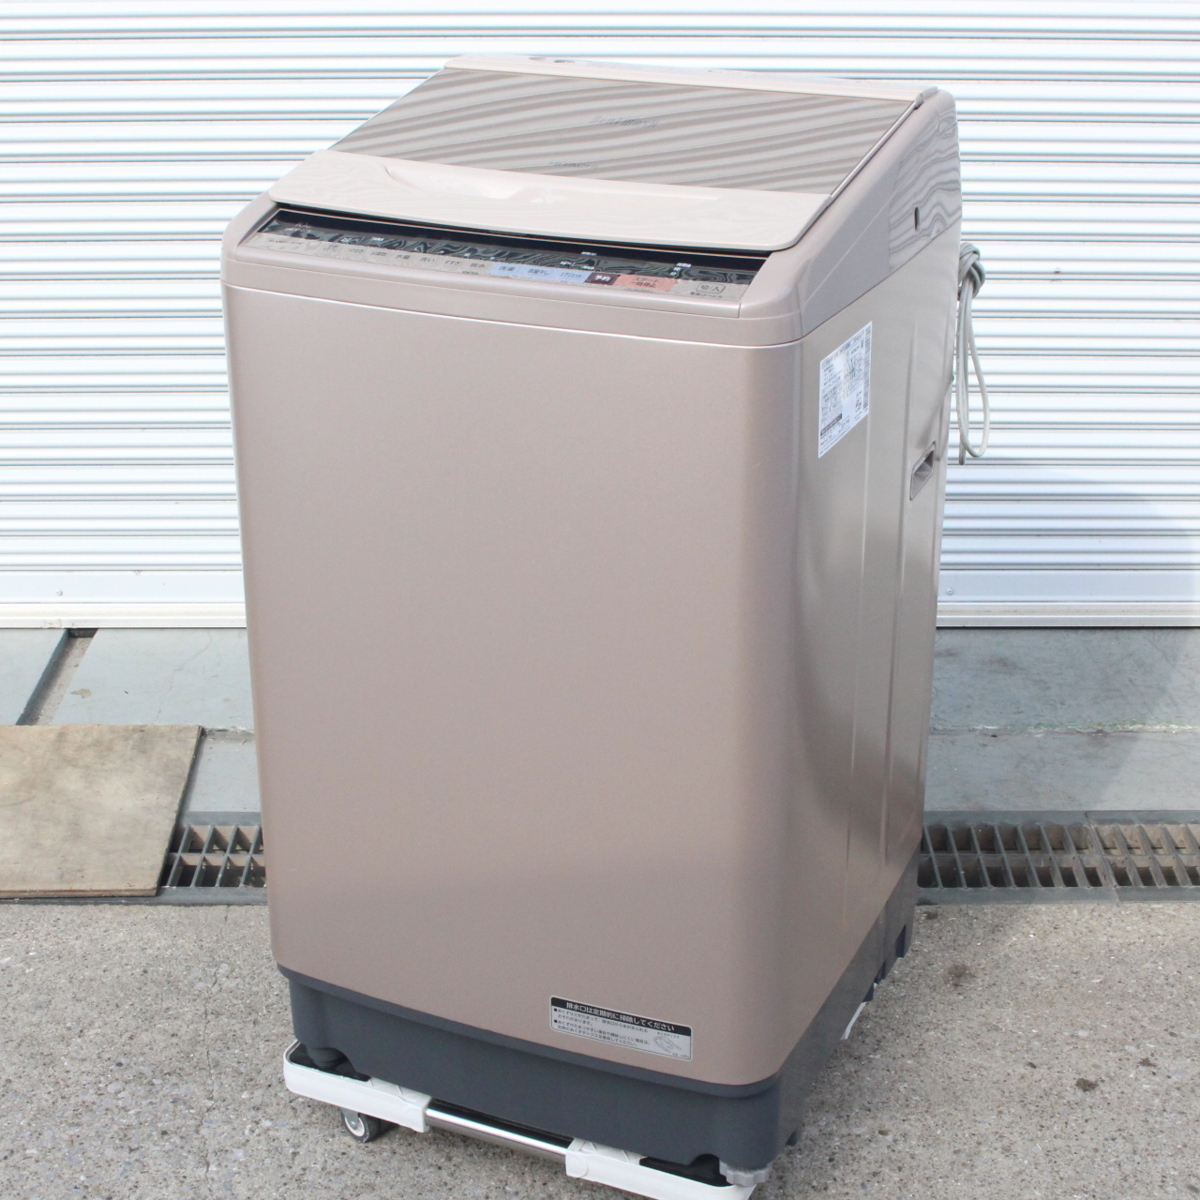 東京都練馬区にて 日立 全自動洗濯機 BW-V100B 2017年製 を出張買取させて頂きました。